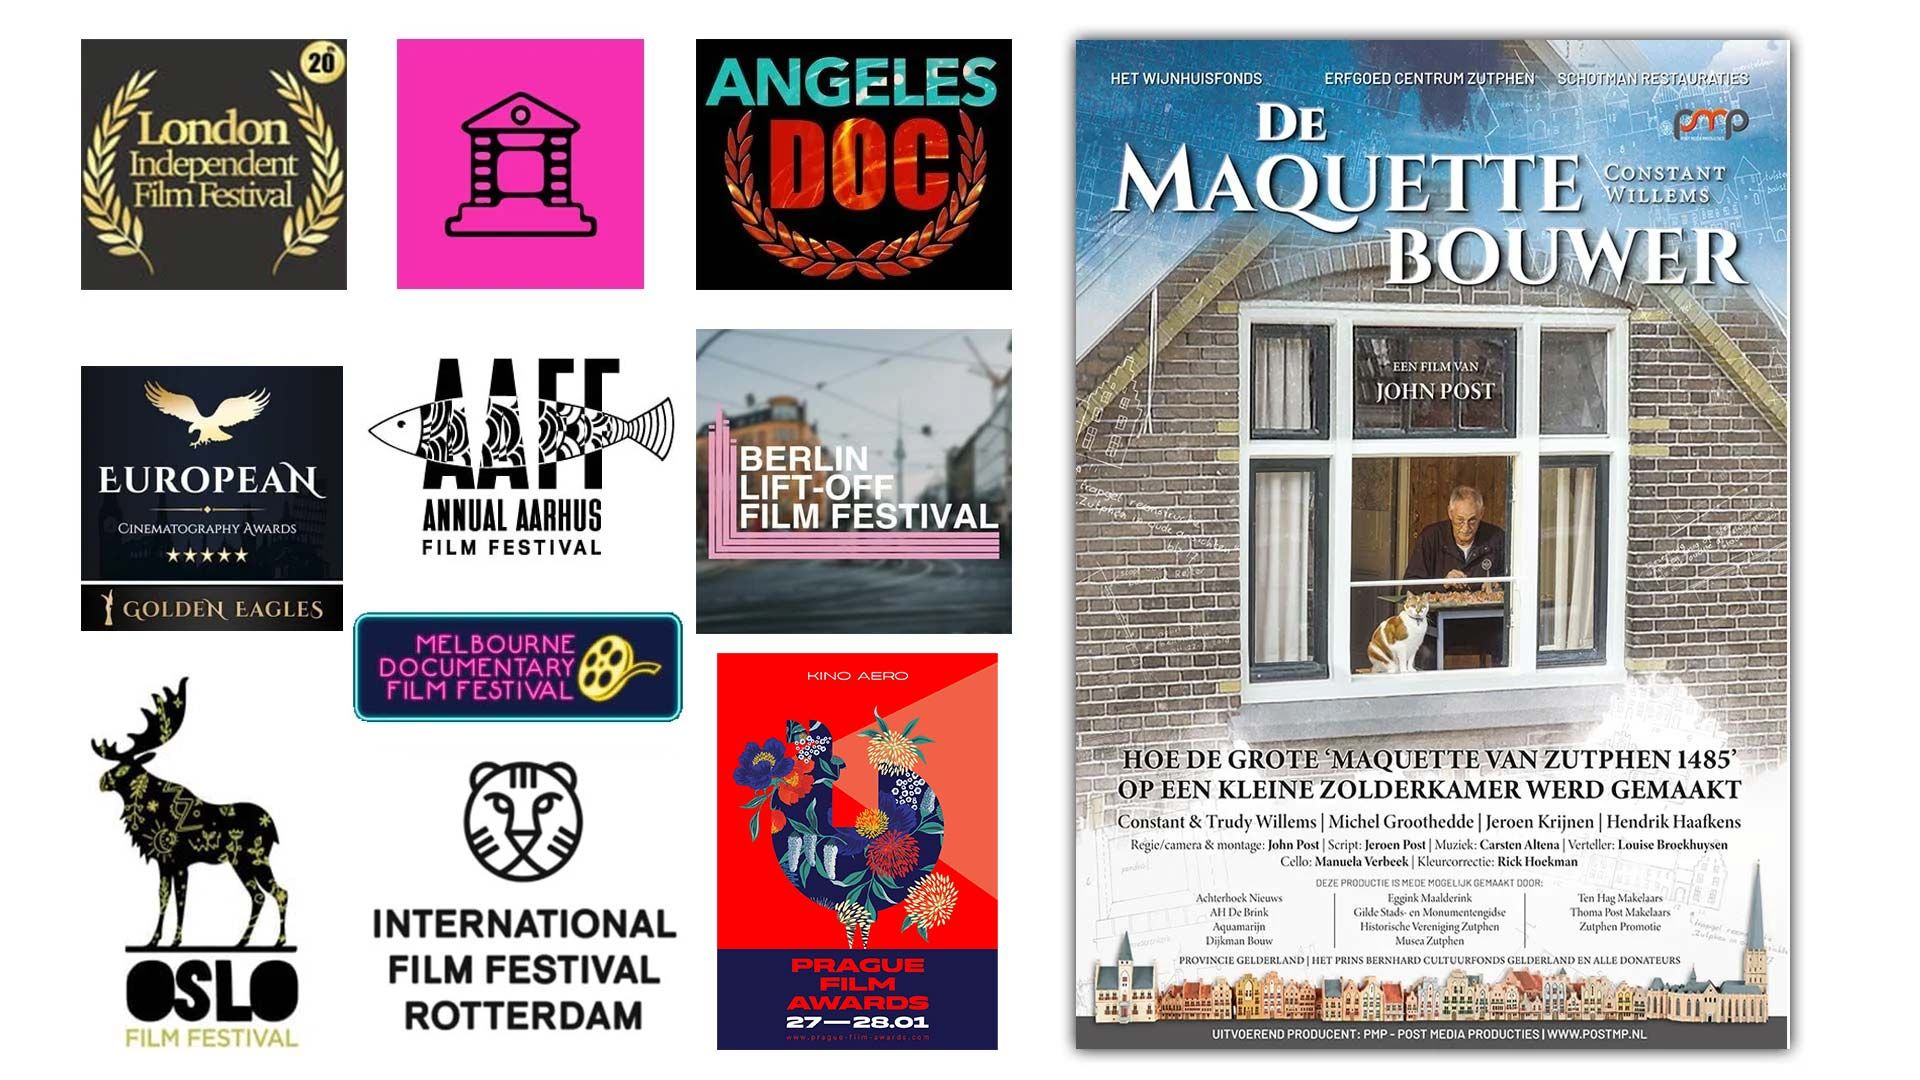 'De Maquettebouwer' is officieel ingezonden naar prestigieuze filmfestivals zoals het Berlin Lift-Off Film Festival, The London Independent Film Festival (LIFF), Oslo Film Festival, Angeles Documentaries, en het Filmfestival Rotterdam.